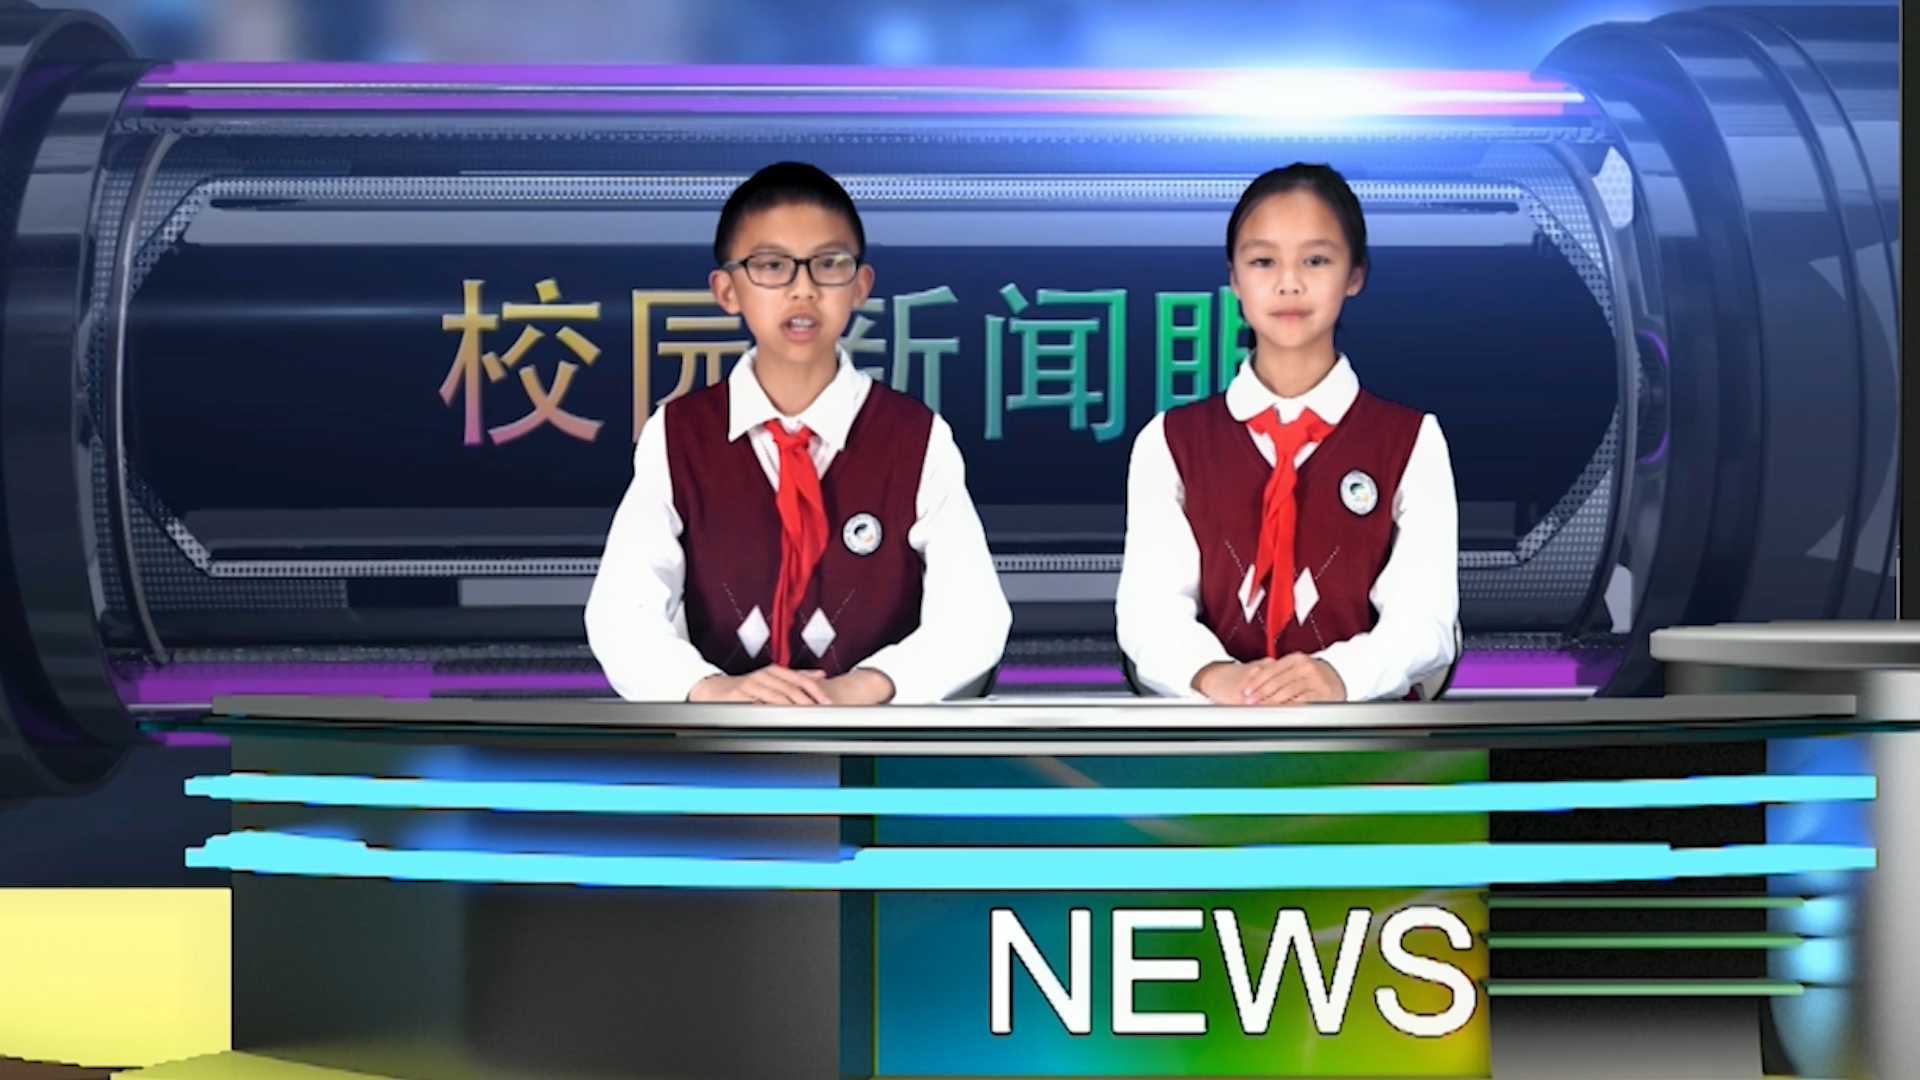 2021年松阳县实验小学集团学校校园电视台4月节目